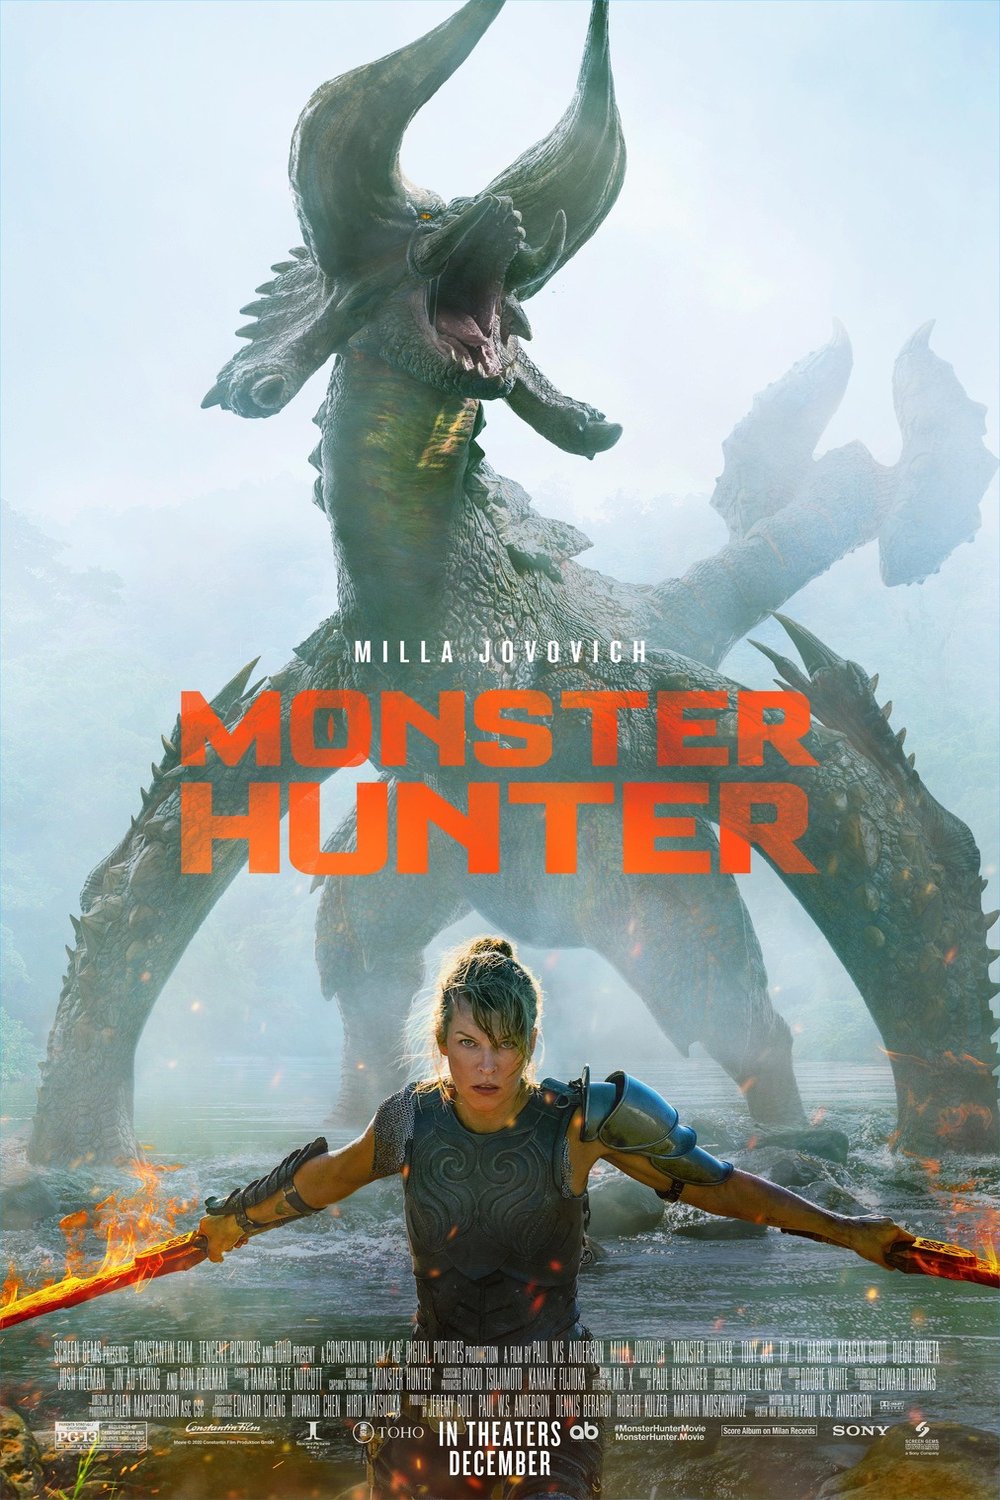 Poster of the movie Monster Hunter v.f.